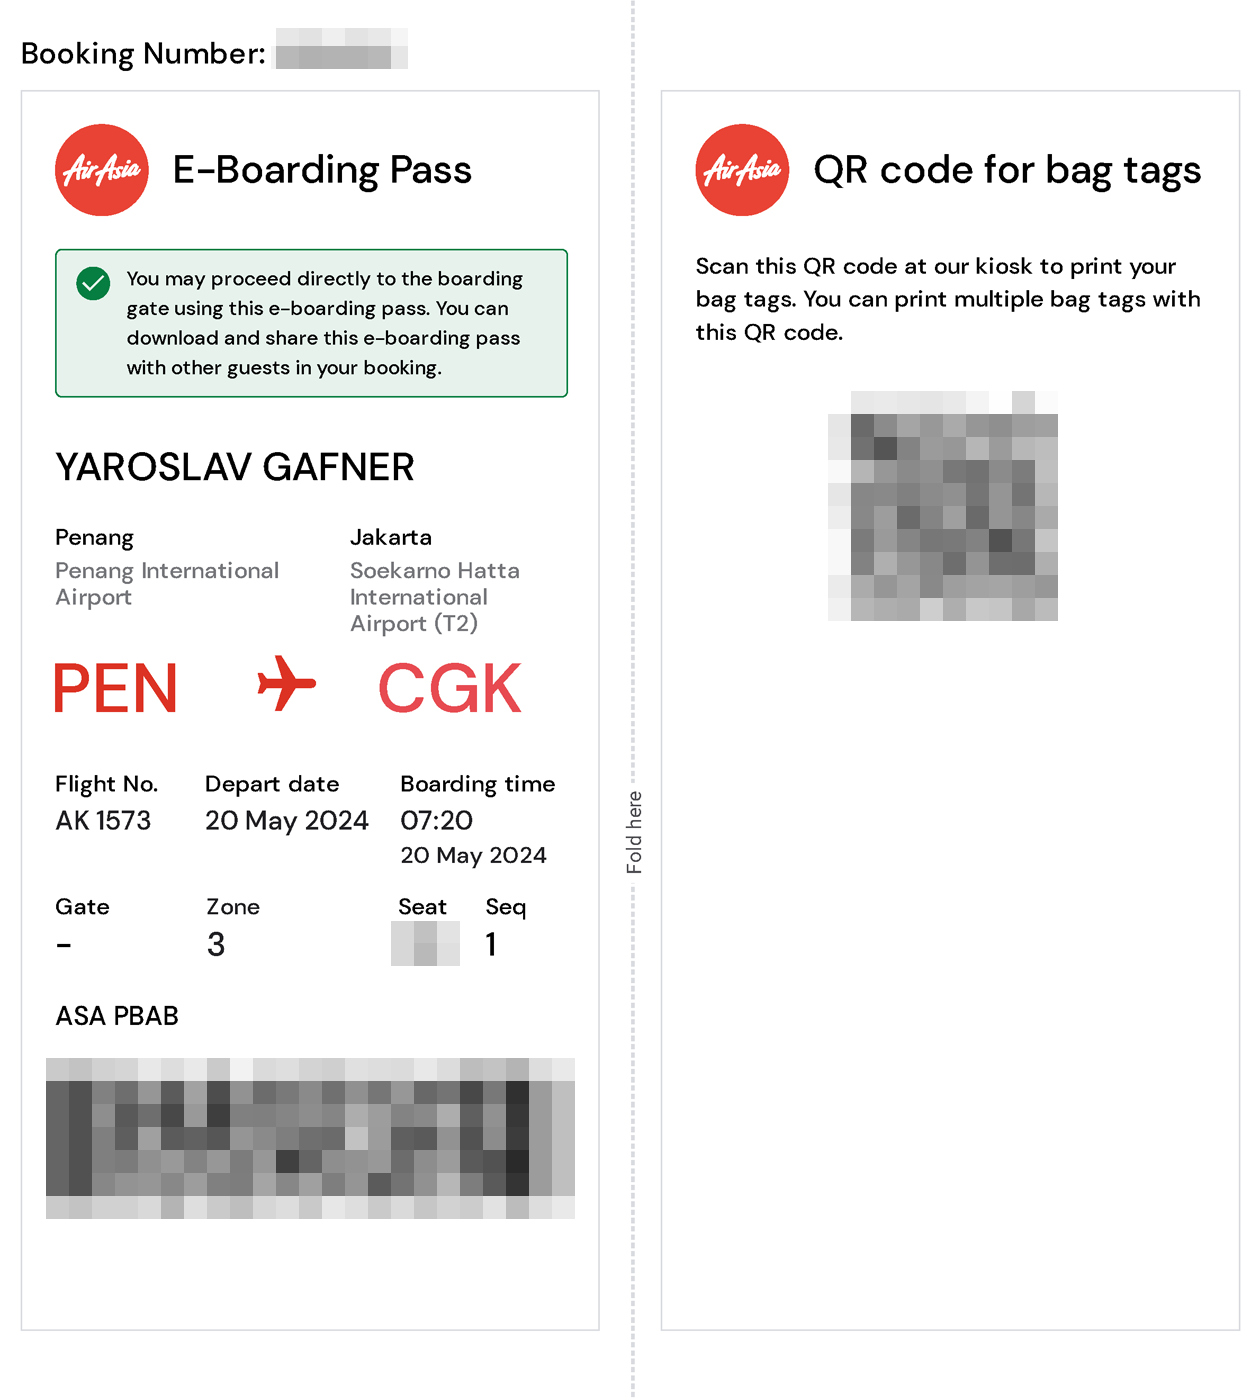 Мобильный посадочный для рейса Пенанг — Джакарта. Распечатывать его не нужно — достаточно показать сотрудникам авиакомпании на экране смартфона